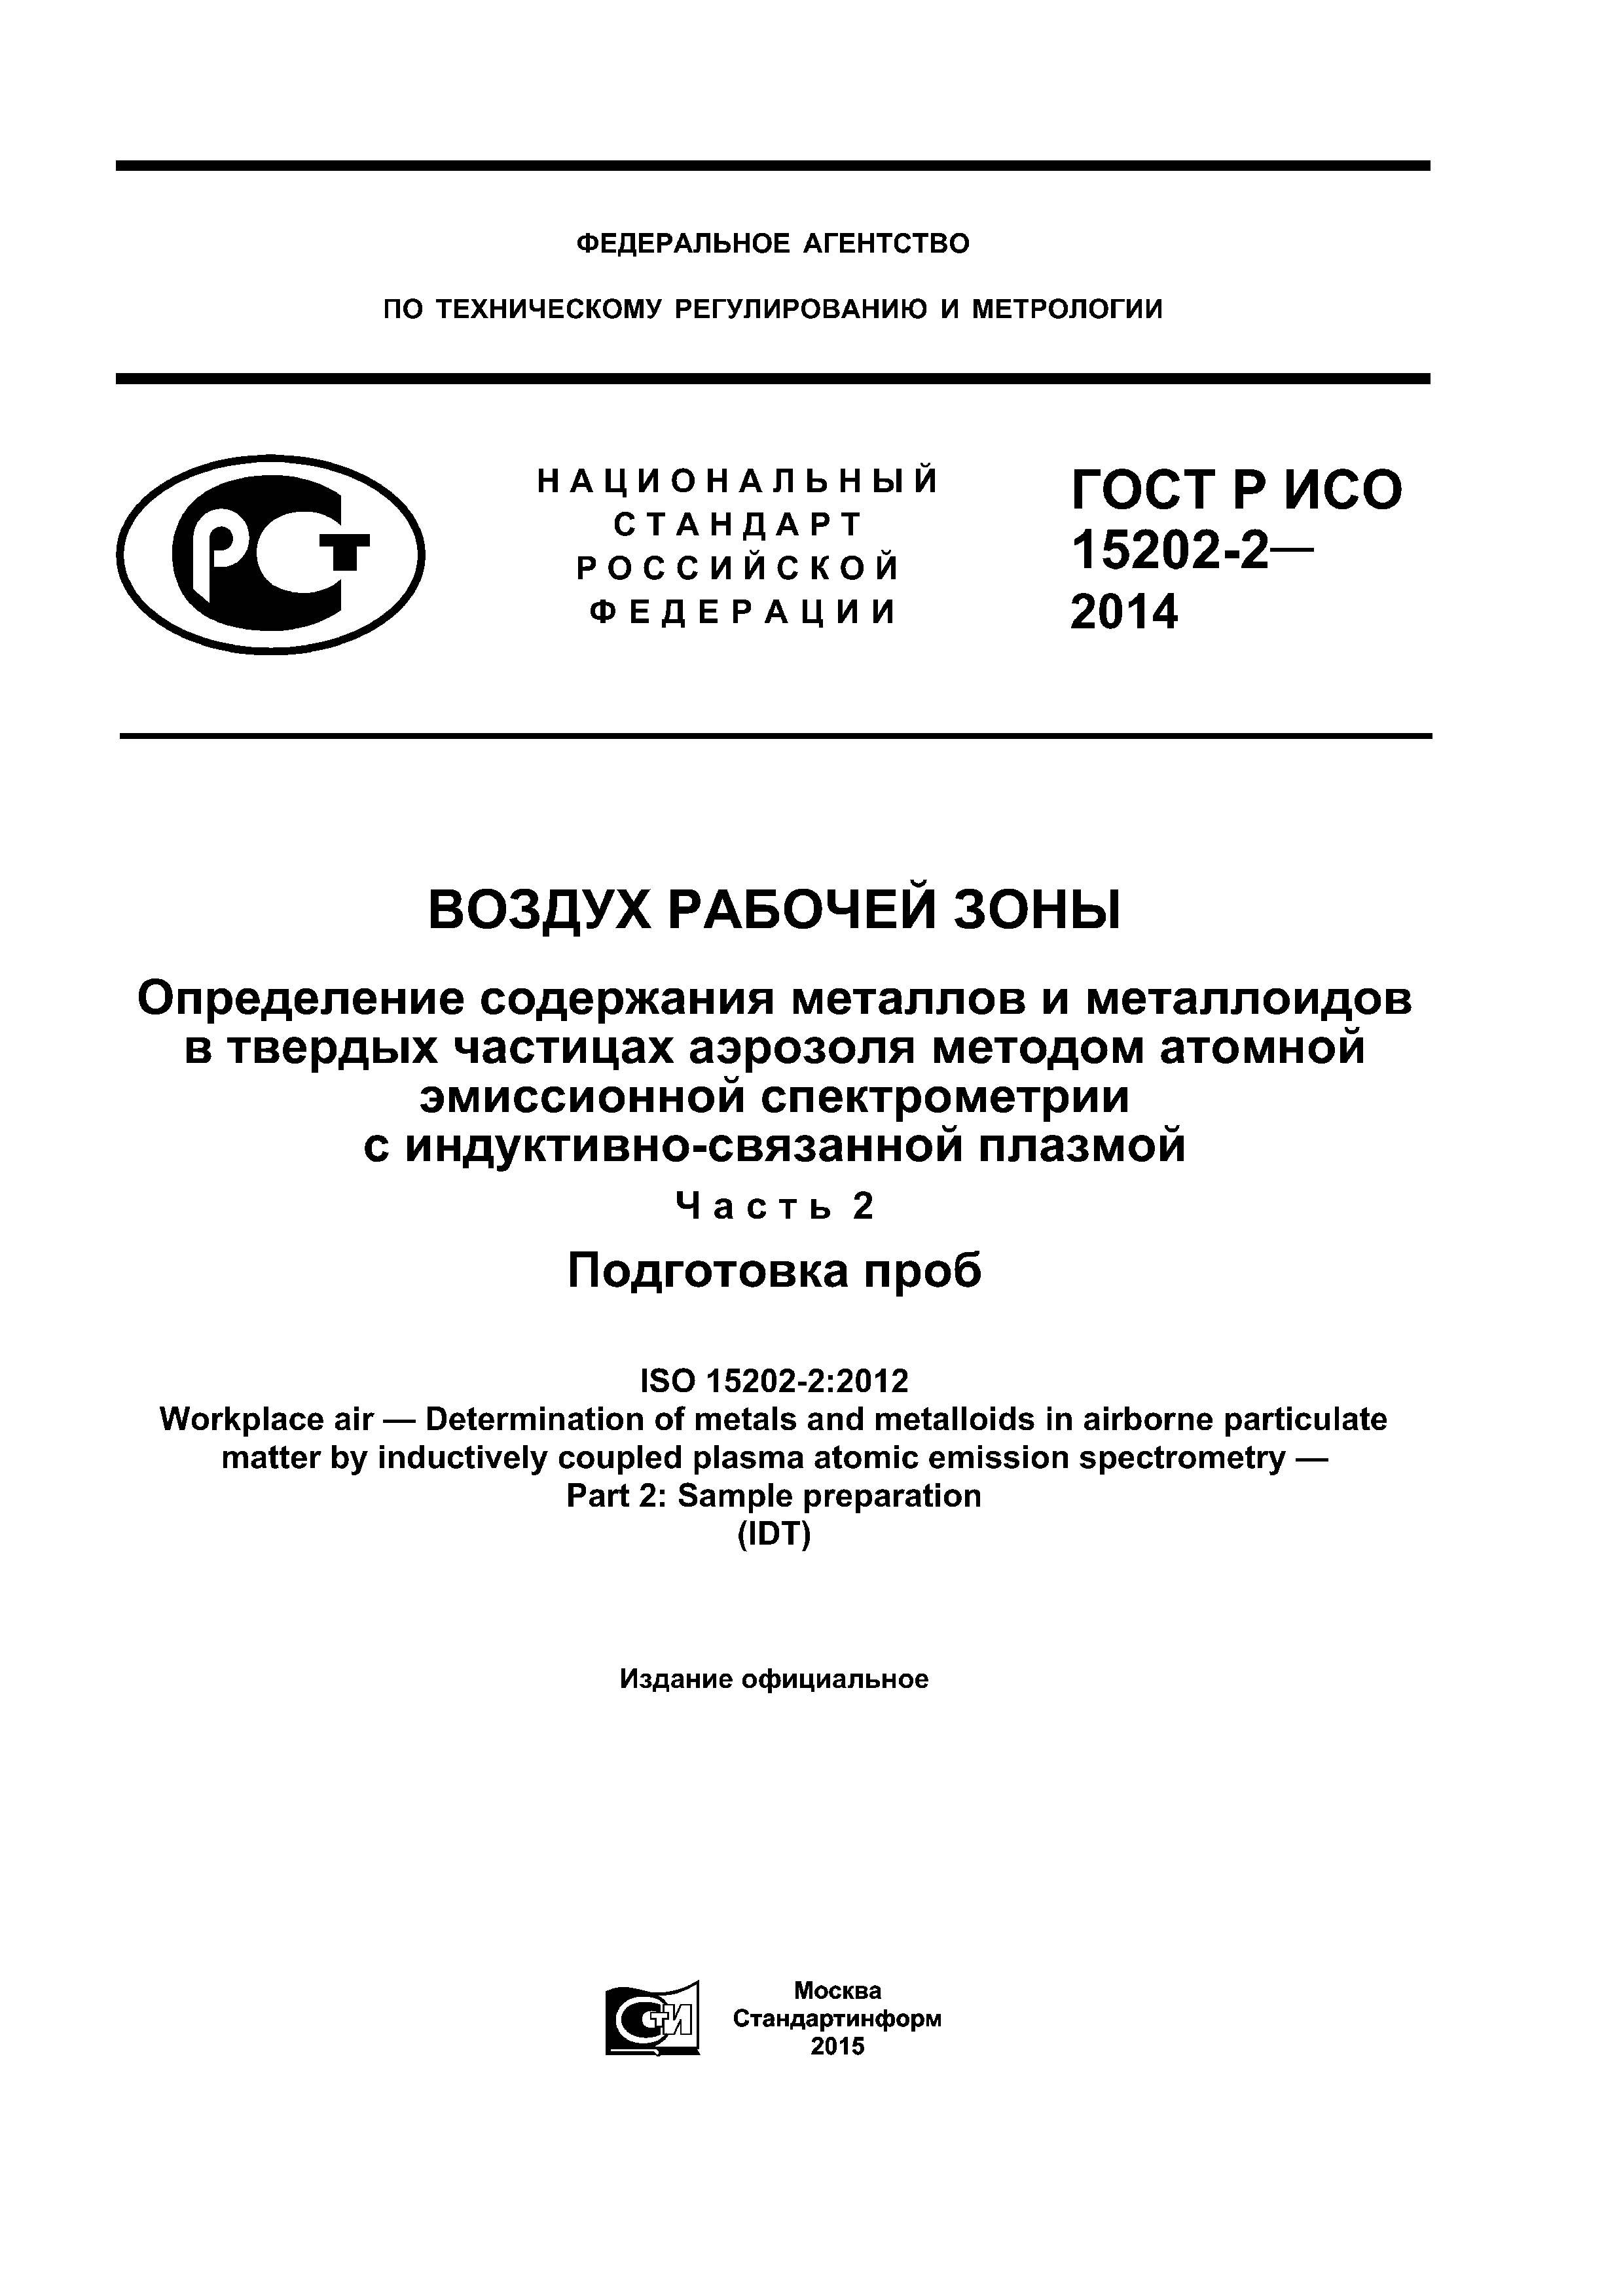 ГОСТ Р ИСО 15202-2-2014